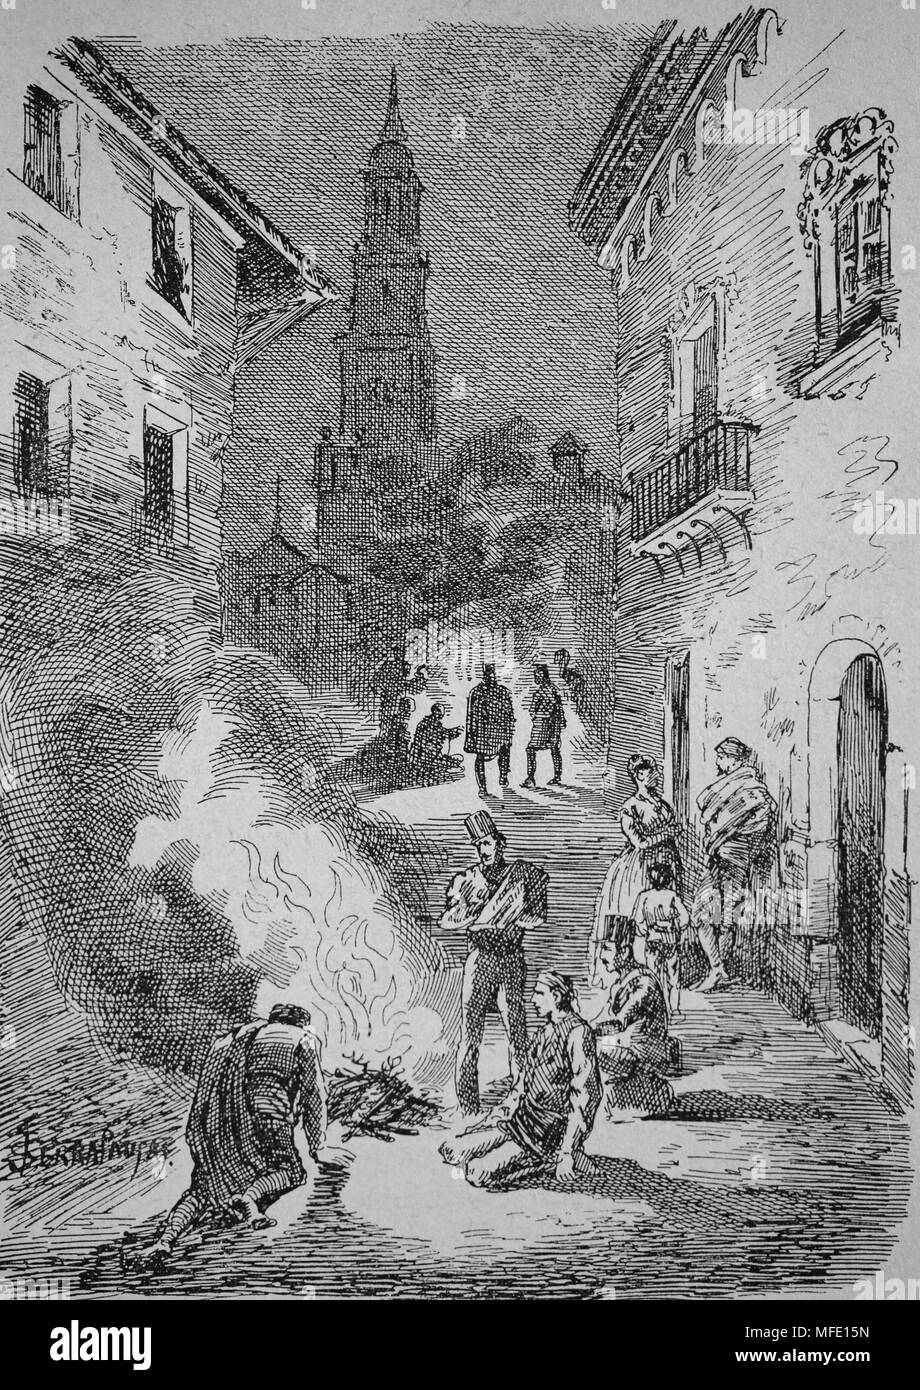 Premier siège de Saragosse. La guerre péninsulaire (1807-1814). Rue de la ville au cours de l'emplacement. Gravure, 19ème siècle. Banque D'Images